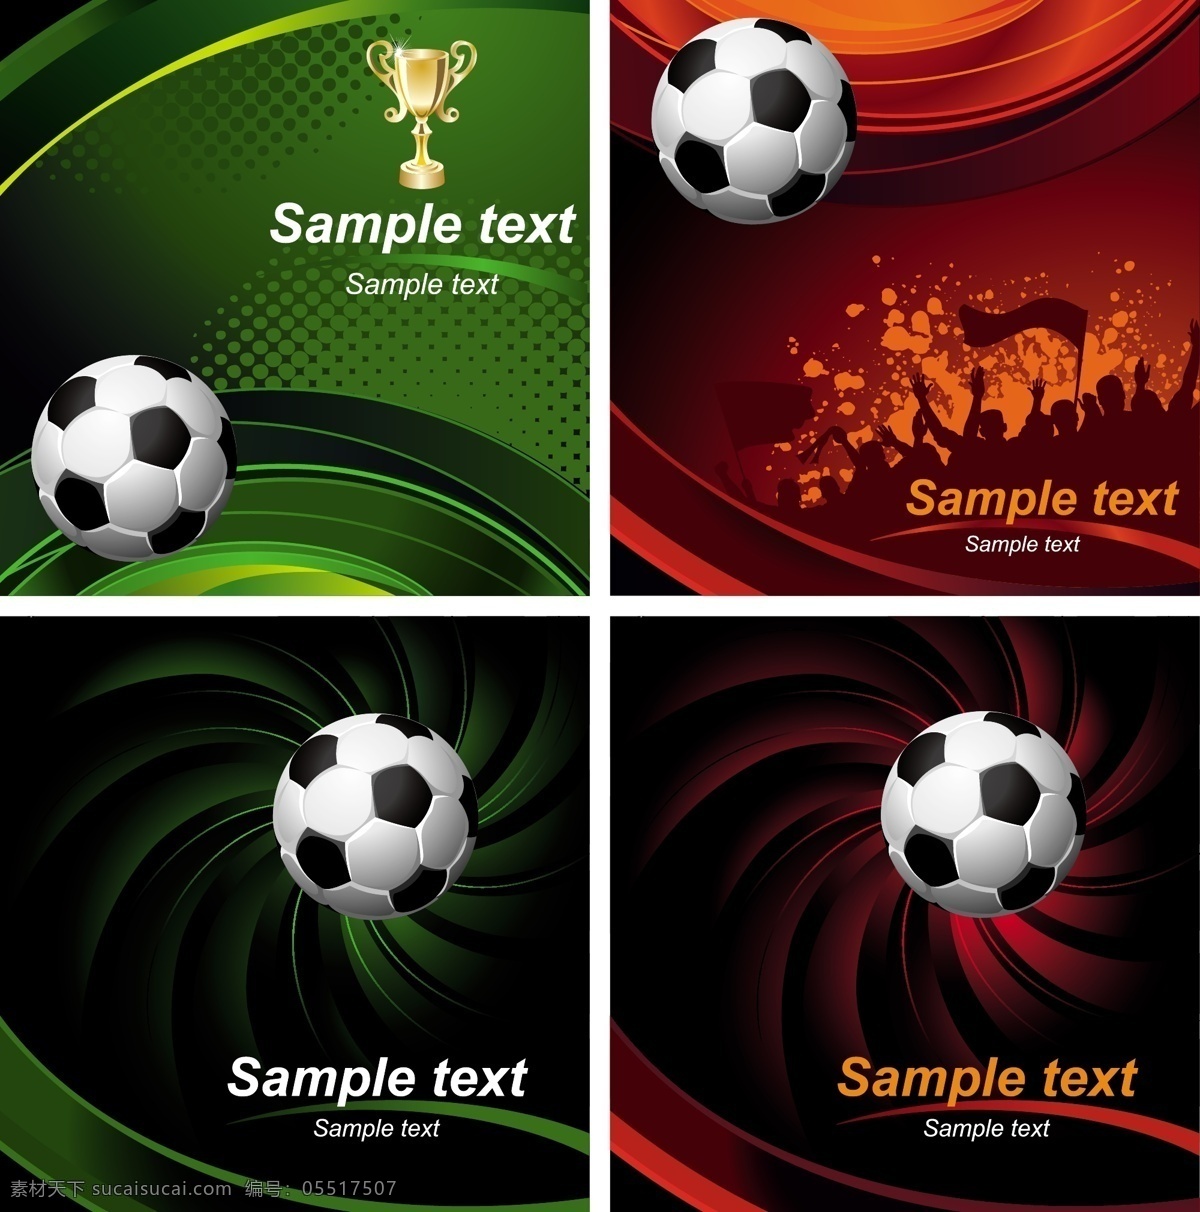 绿色 红色 足球 背景 模板下载 奖杯 世界杯 巴西 体育运动 生活百科 矢量素材 黑色